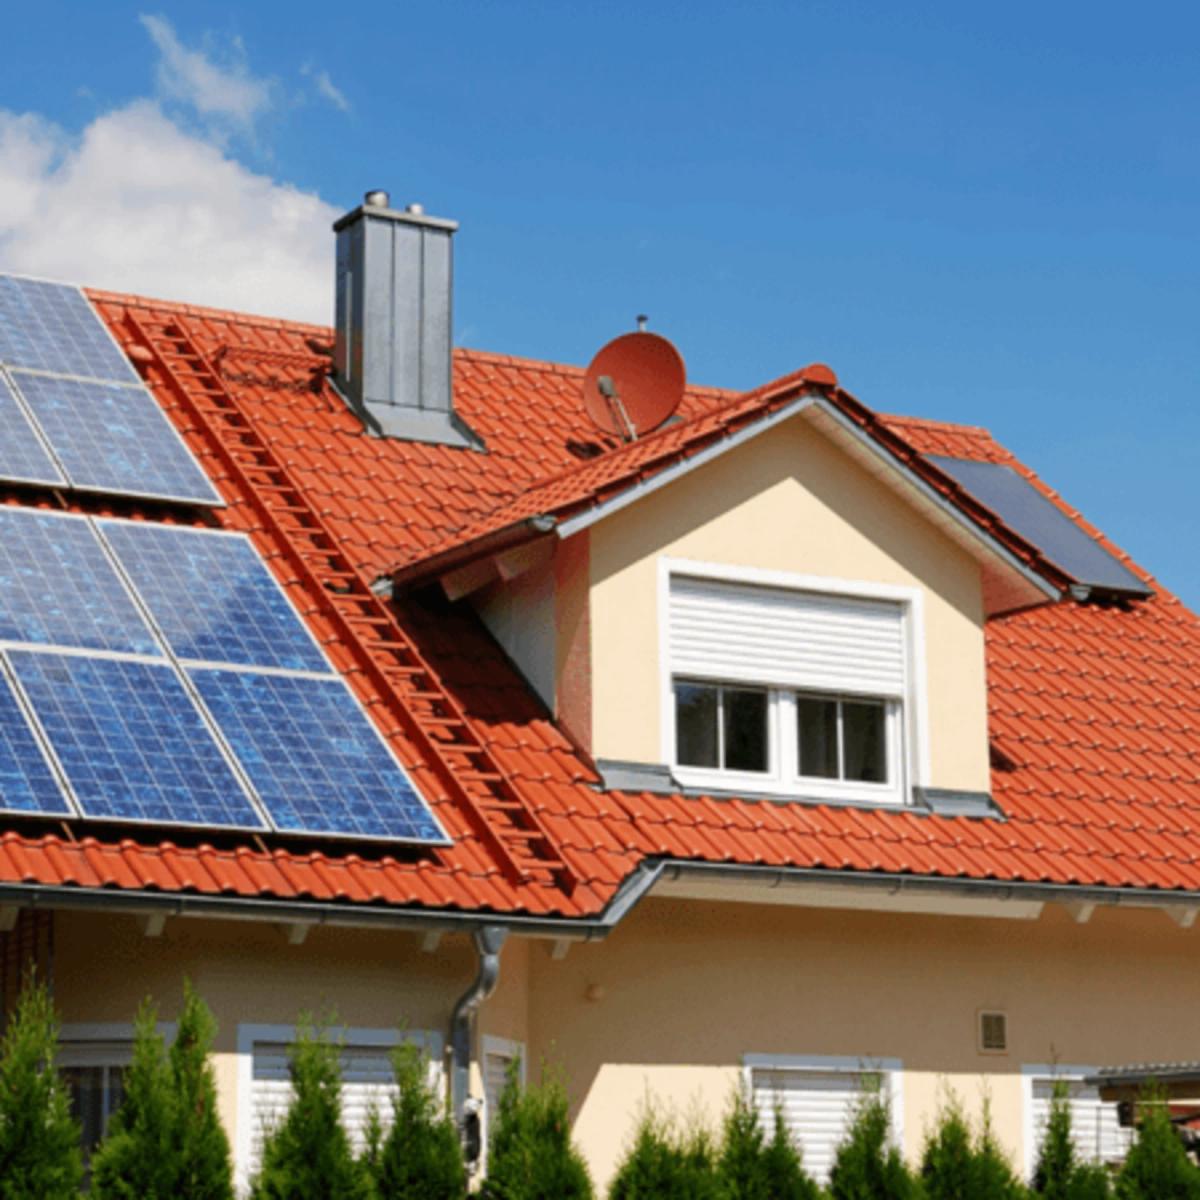 Le nouveau livre blanc EDGE montre le niveau extrême de fragmentation de la politique relative au photovoltaïque sur toiture en Suisse